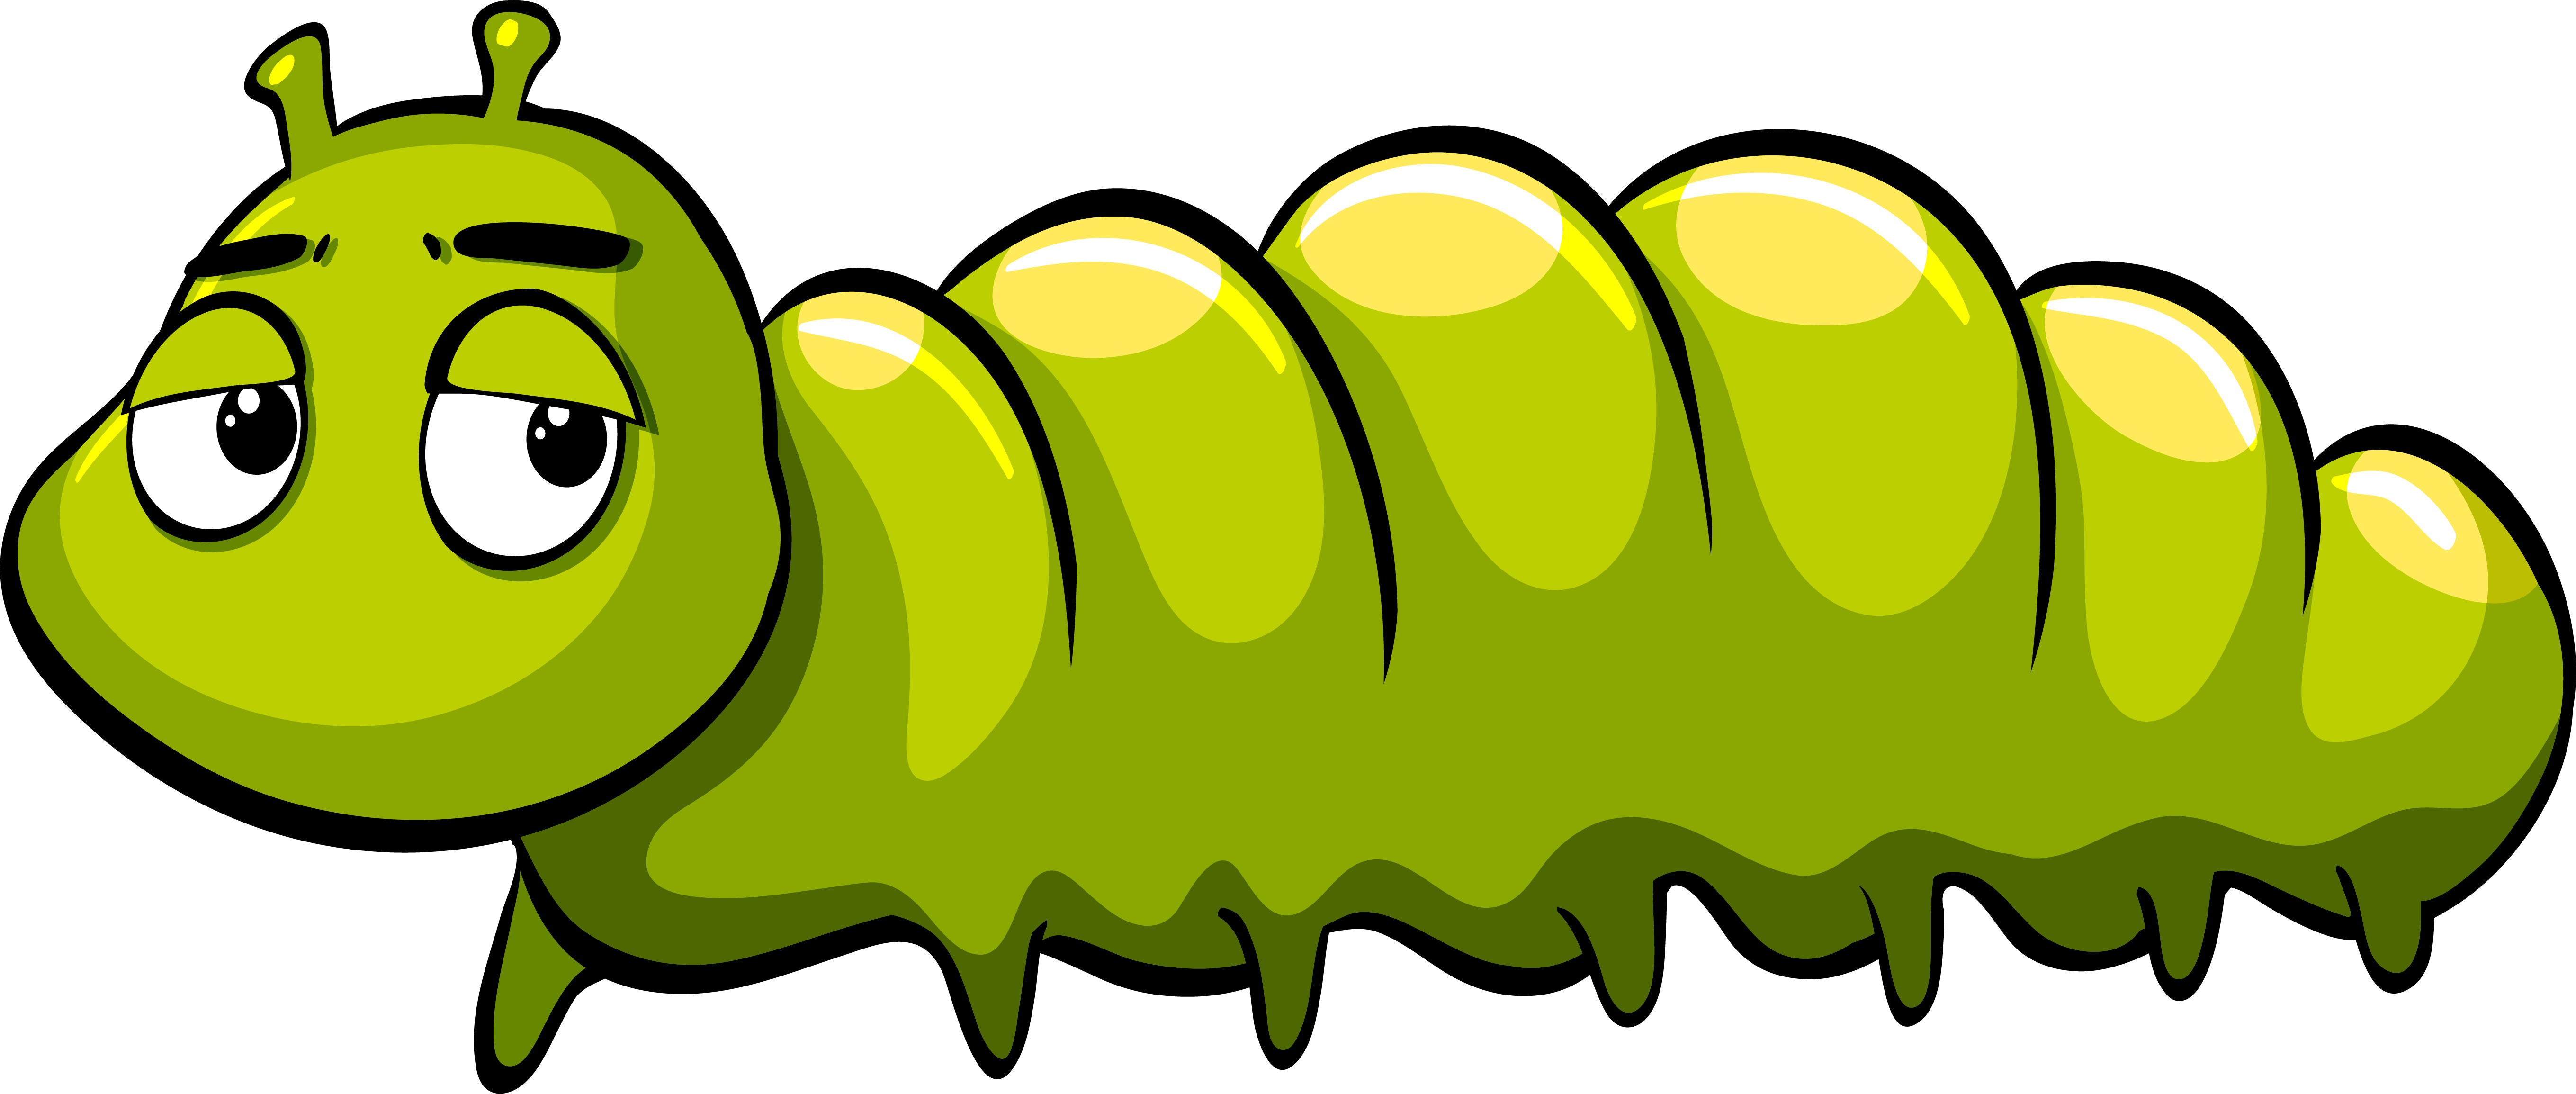 Royalty-free Caterpillar Illustration - Green cartoon caterpillar png ...